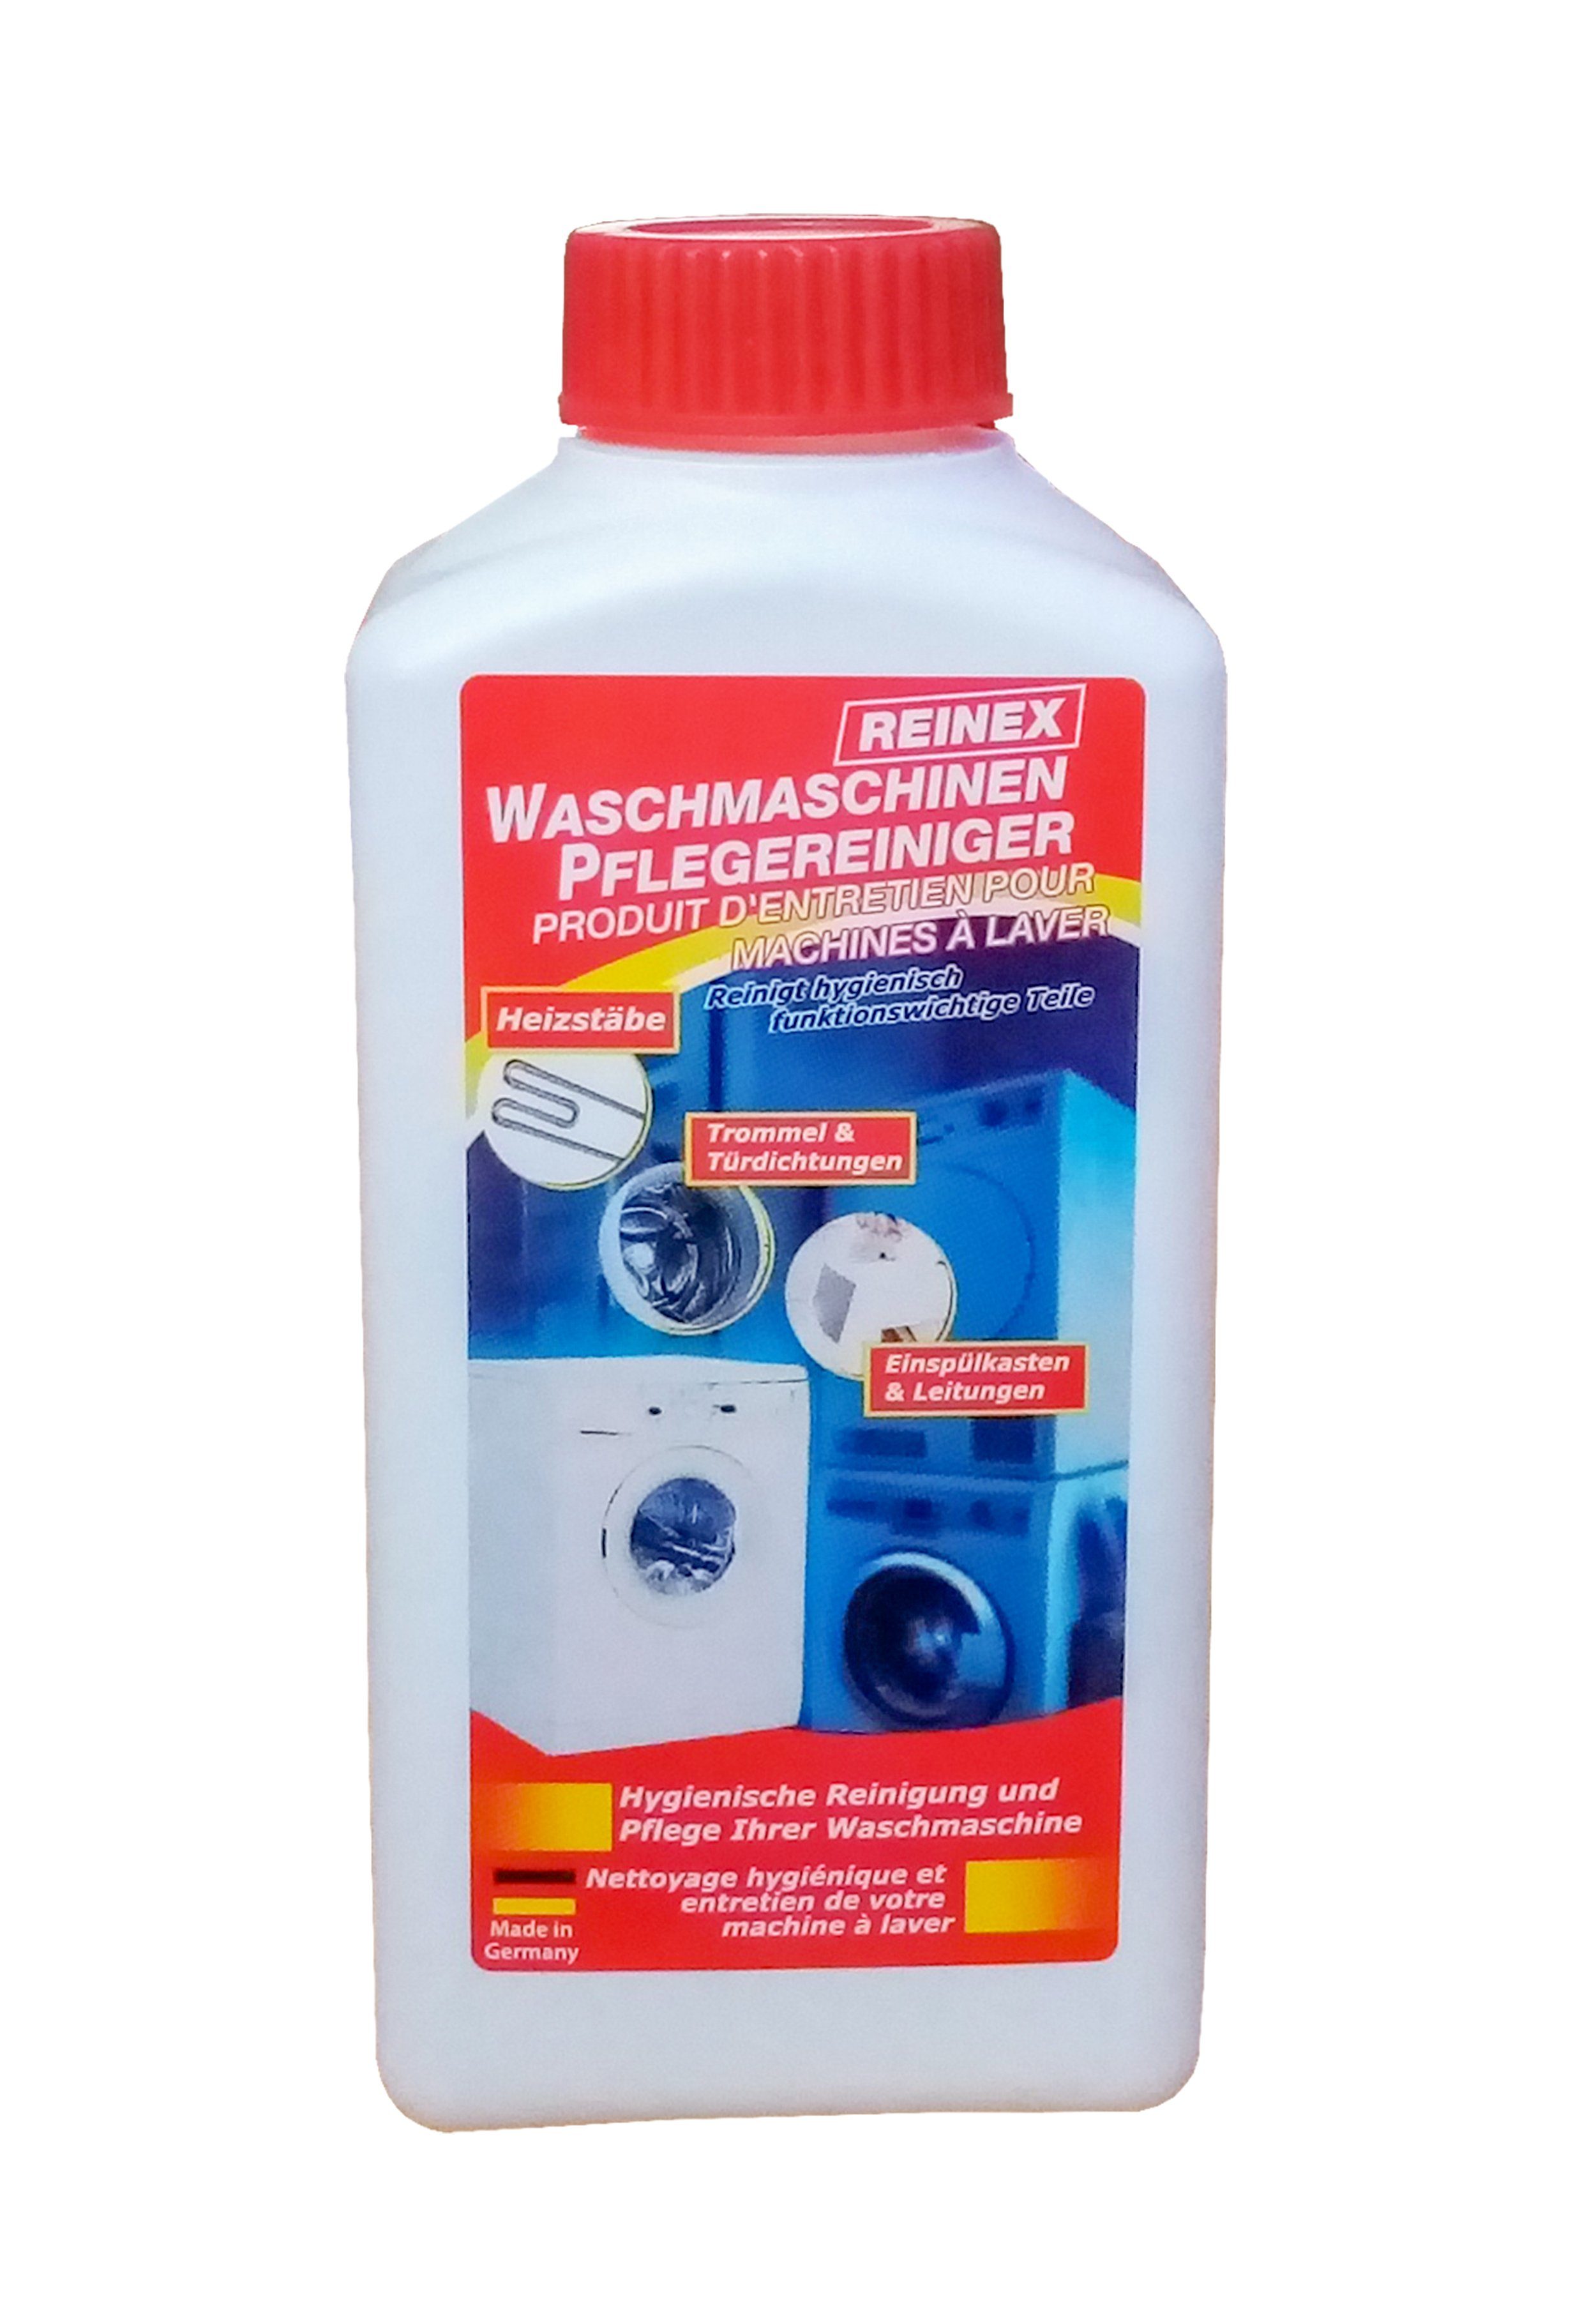 Reinex WASCHMASCHINEN PFLEGEREINIGER 250ml Waschmaschinenpflege 73 Waschmaschinenpflege (Waschmaschine Waschmaschinen Hygiene Reinigung Pflege Reiniger) | Maschinenreiniger